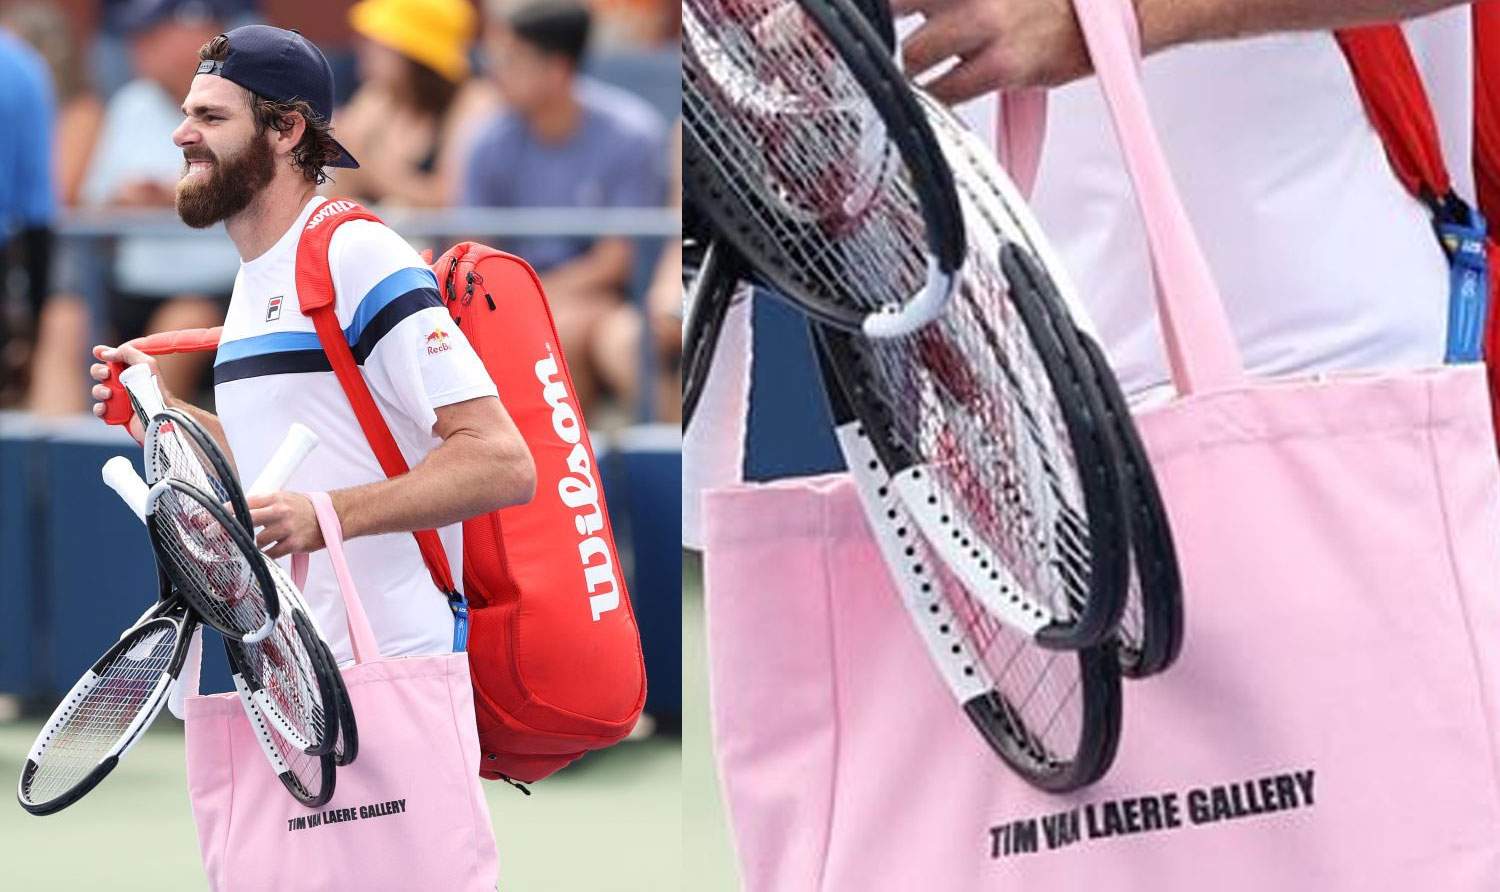 Tennis : Reilly Opelka sanctionnée à l'US Open pour avoir exhibé le sac d'une galerie d'art